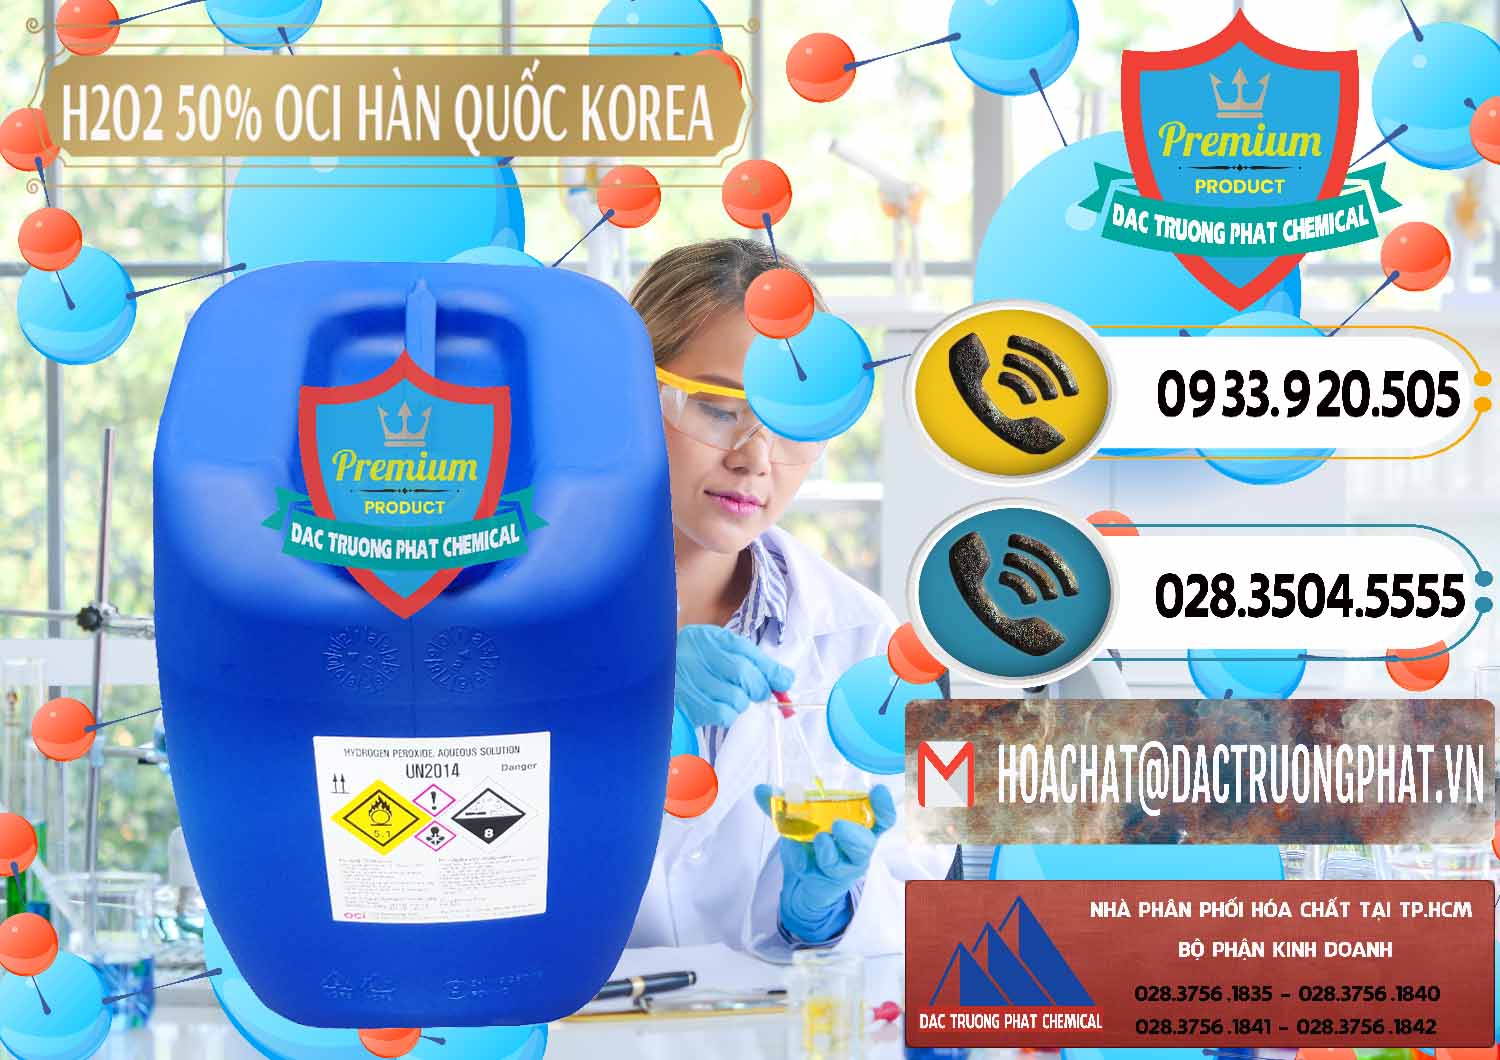 Nơi chuyên cung ứng _ bán H2O2 - Hydrogen Peroxide 50% OCI Hàn Quốc Korea - 0075 - Nơi cung cấp _ bán hóa chất tại TP.HCM - hoachatdetnhuom.vn